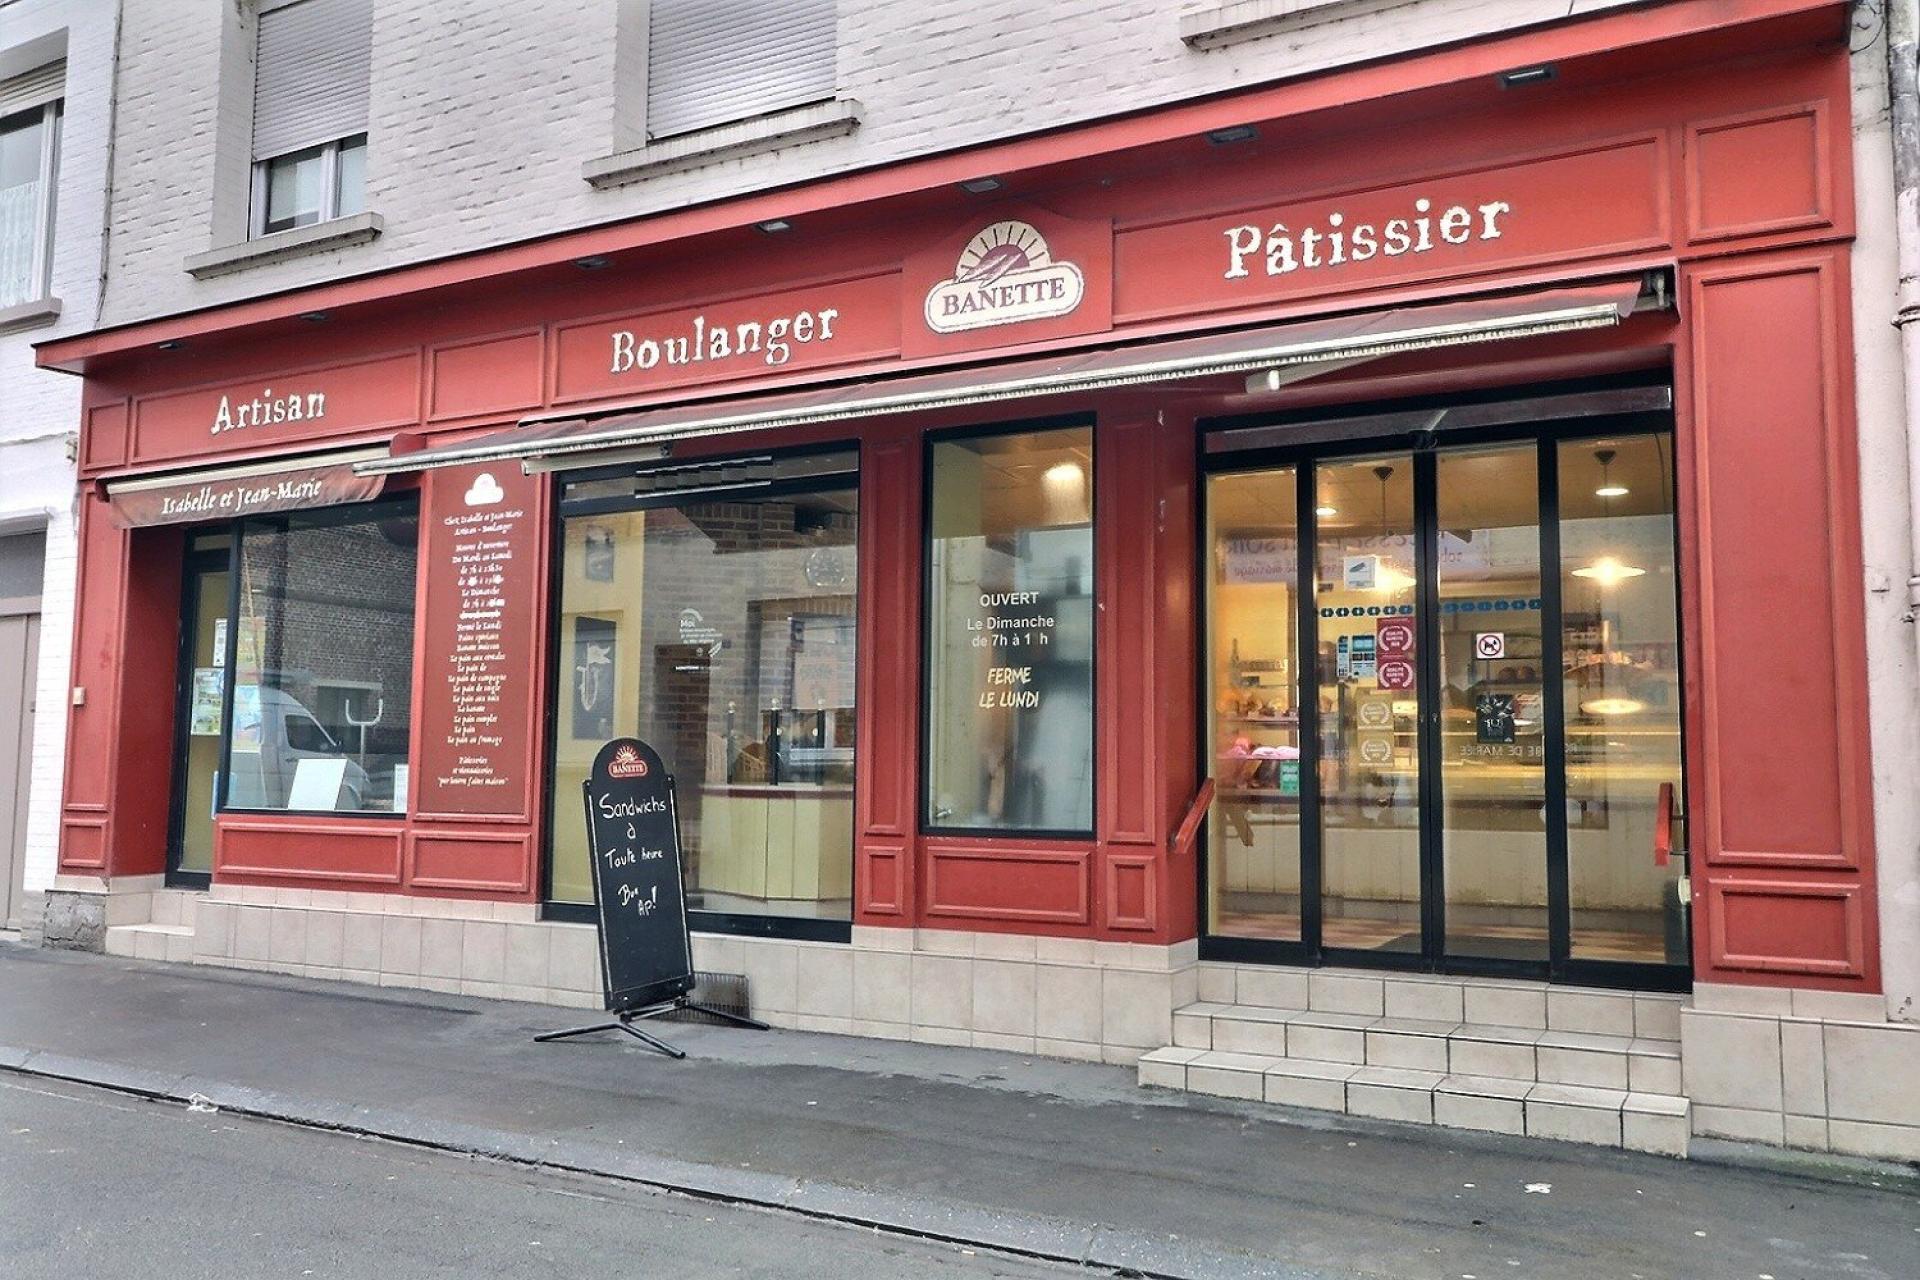 Fonds de commerce de Boulangerie-Patisserie à Solesmes 59730 ( 4400 habitants), belle activité ave